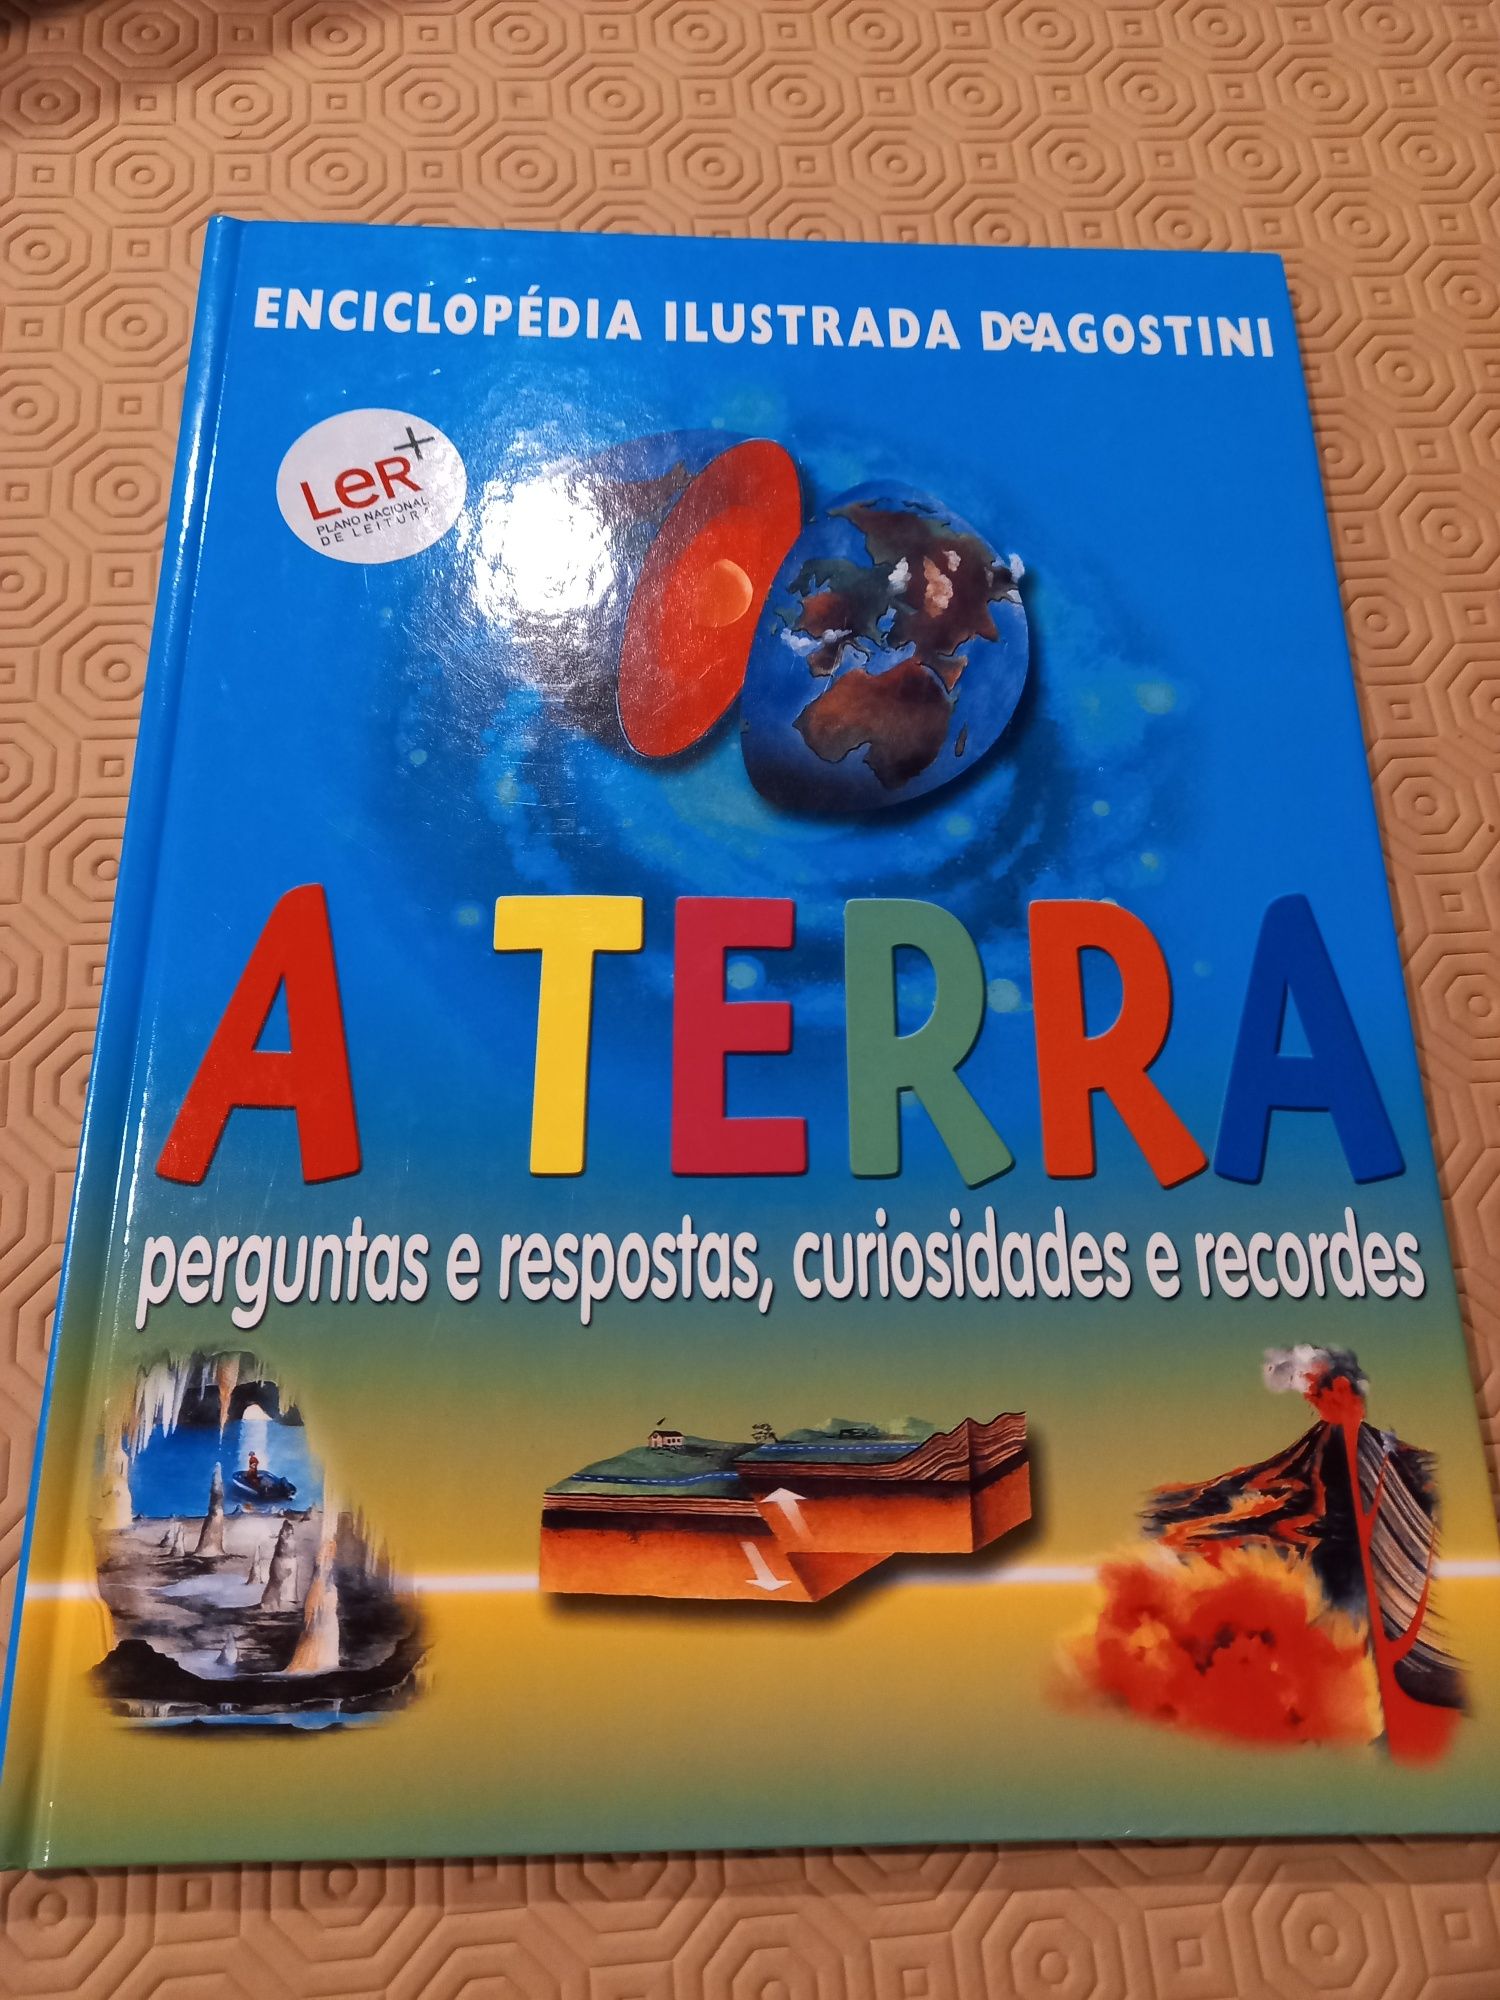 Enciclopédia A TERRA